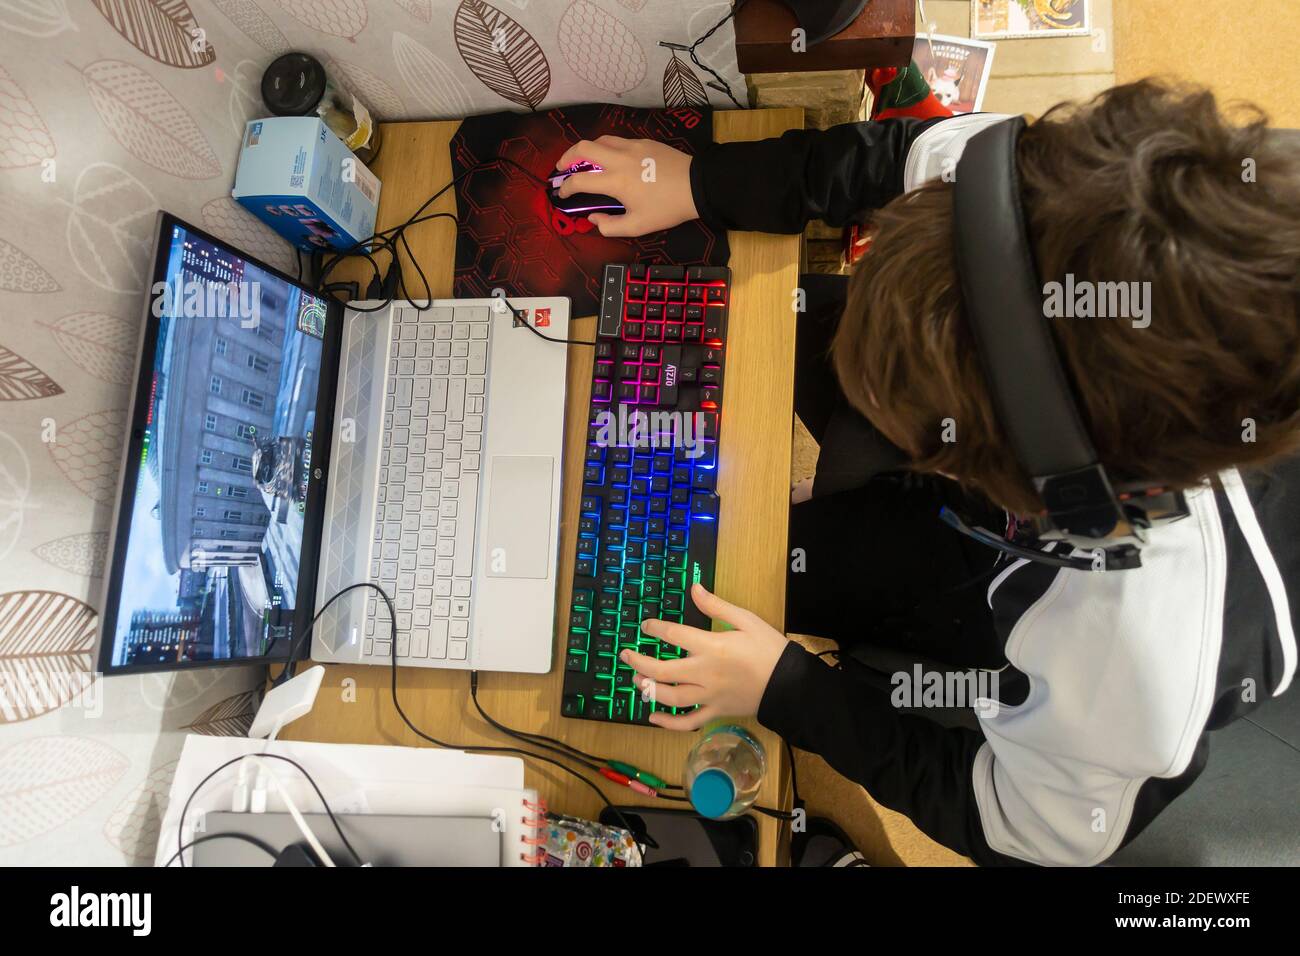 Mirando hacia abajo a un niño sentado en un escritorio, jugando un juego de ordenador en un ordenador portátil con un ratón y un teclado de juego iluminado. Foto de stock